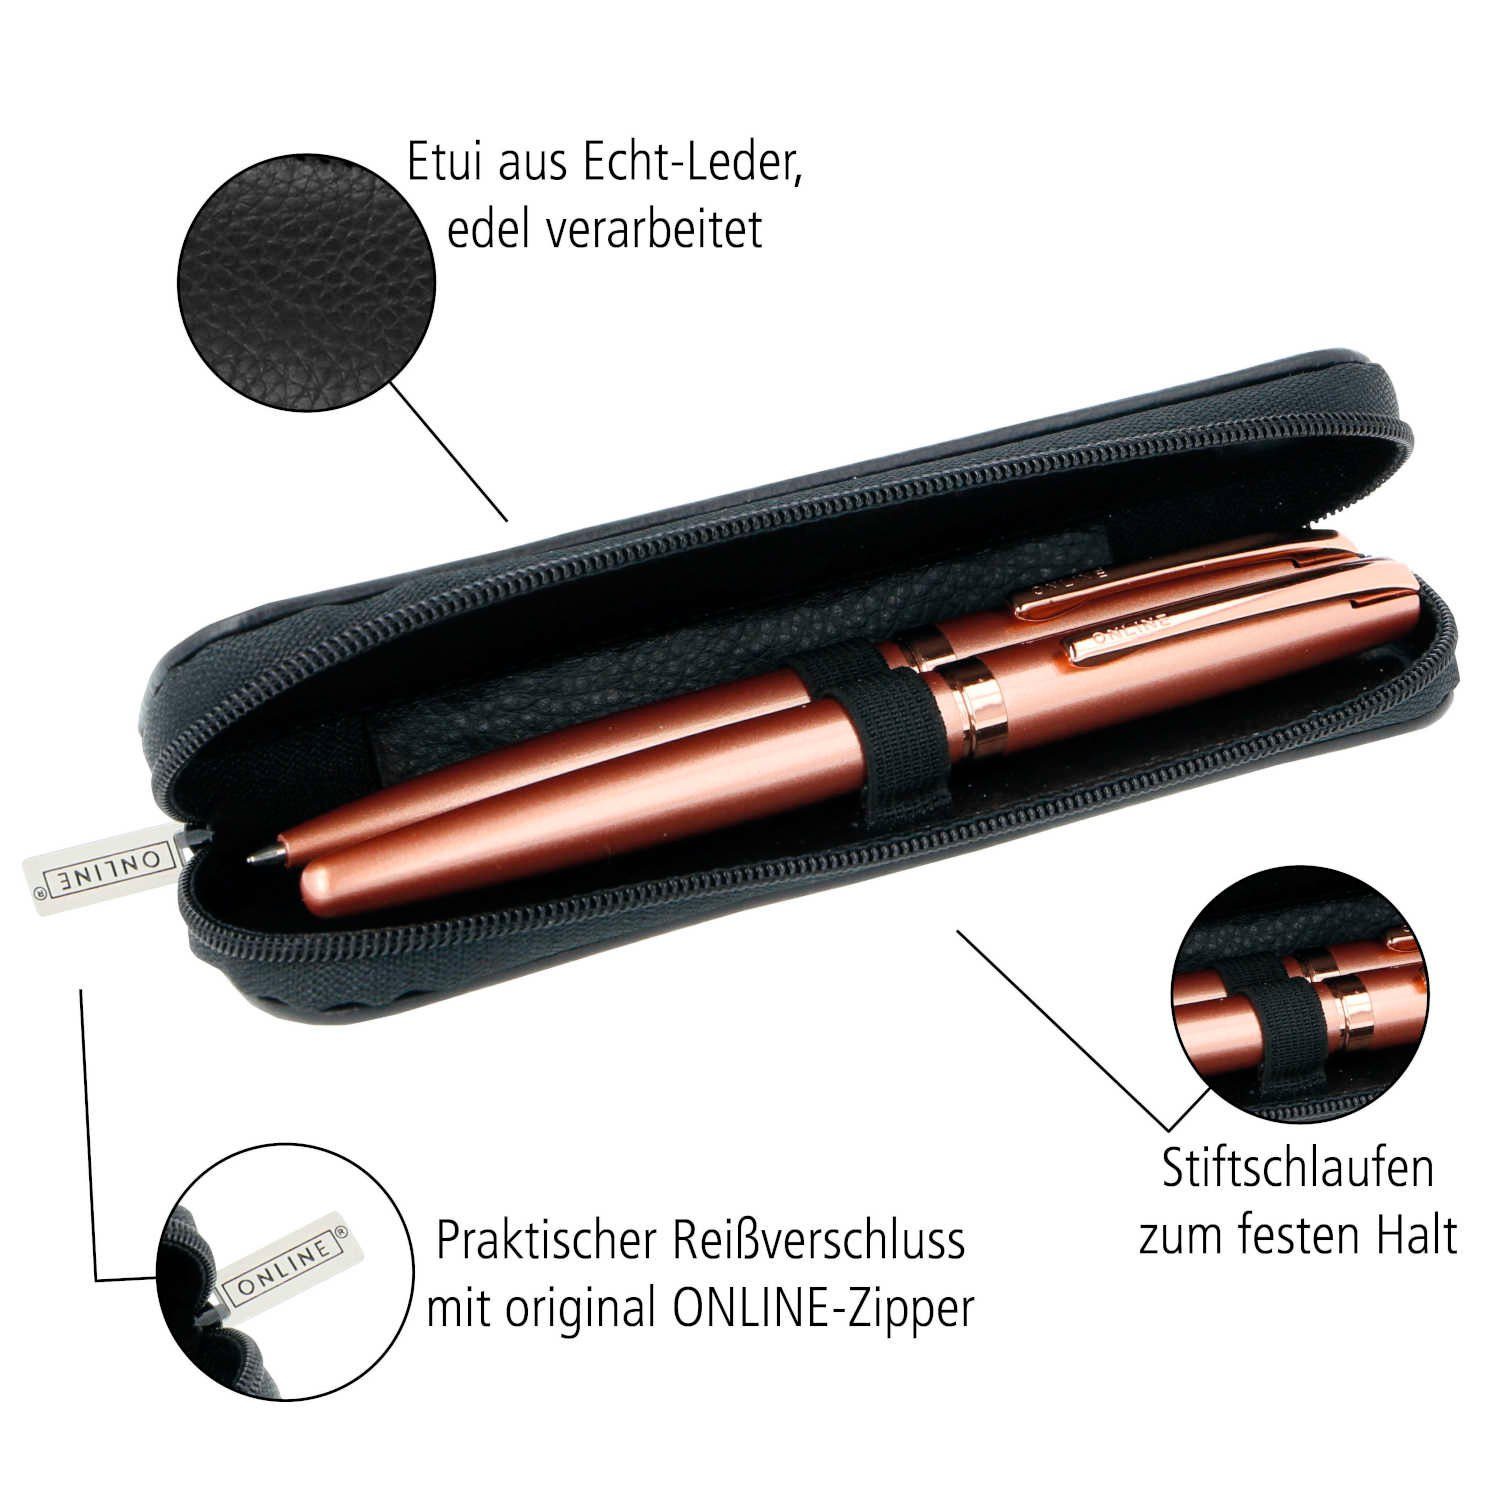 aus schwarz Pen Schreibgeräteetui Echtleder Lederetui, Stifte-Mäppchen Füller-Etui), Online (hochwertiges